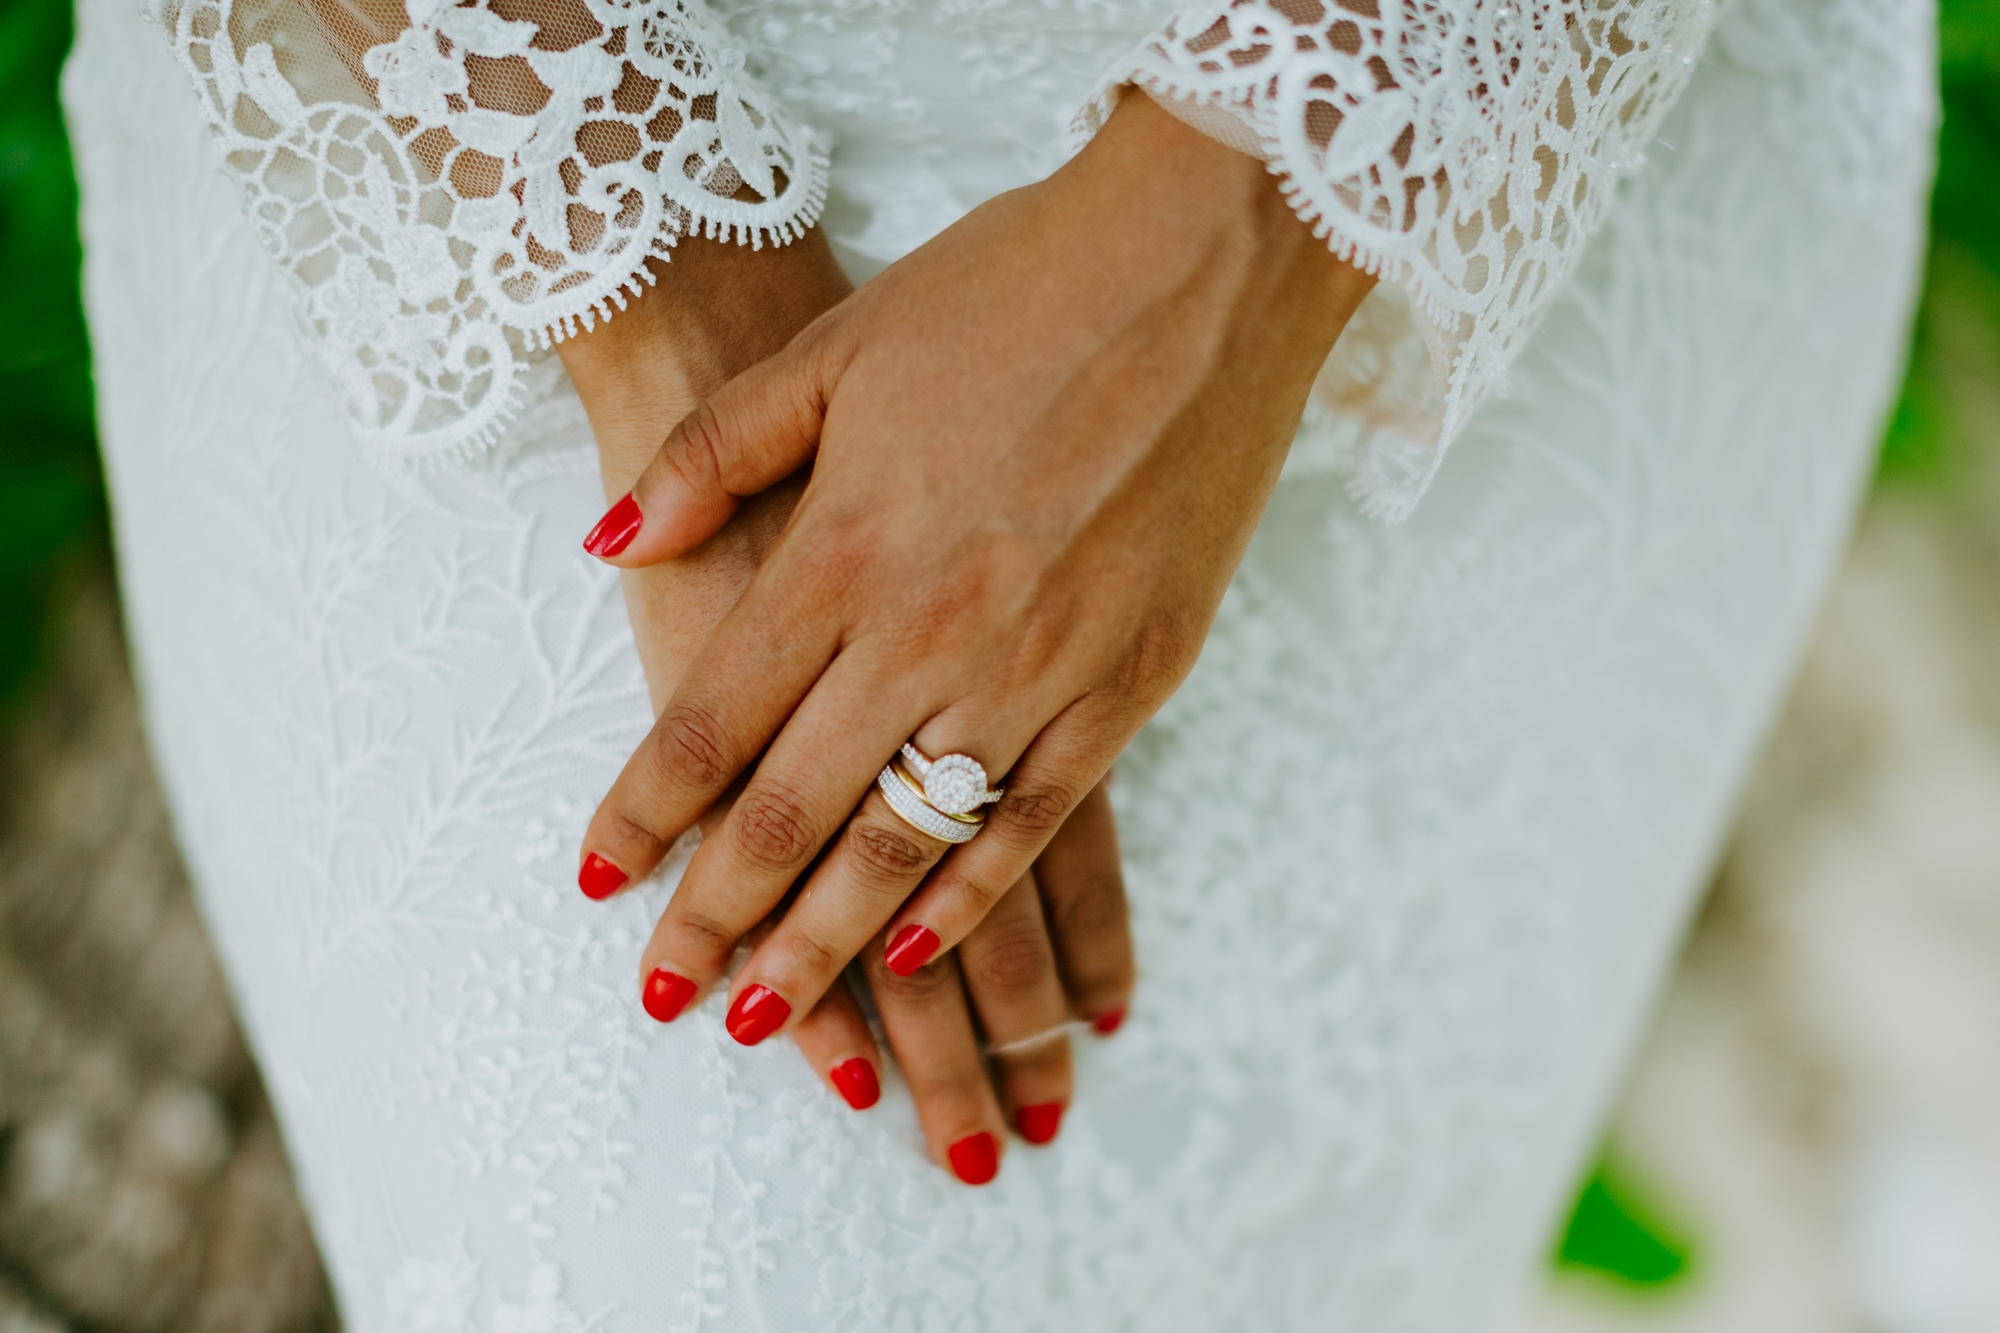 Die Braut trägt auf ihren Nägeln roten Nagellack.